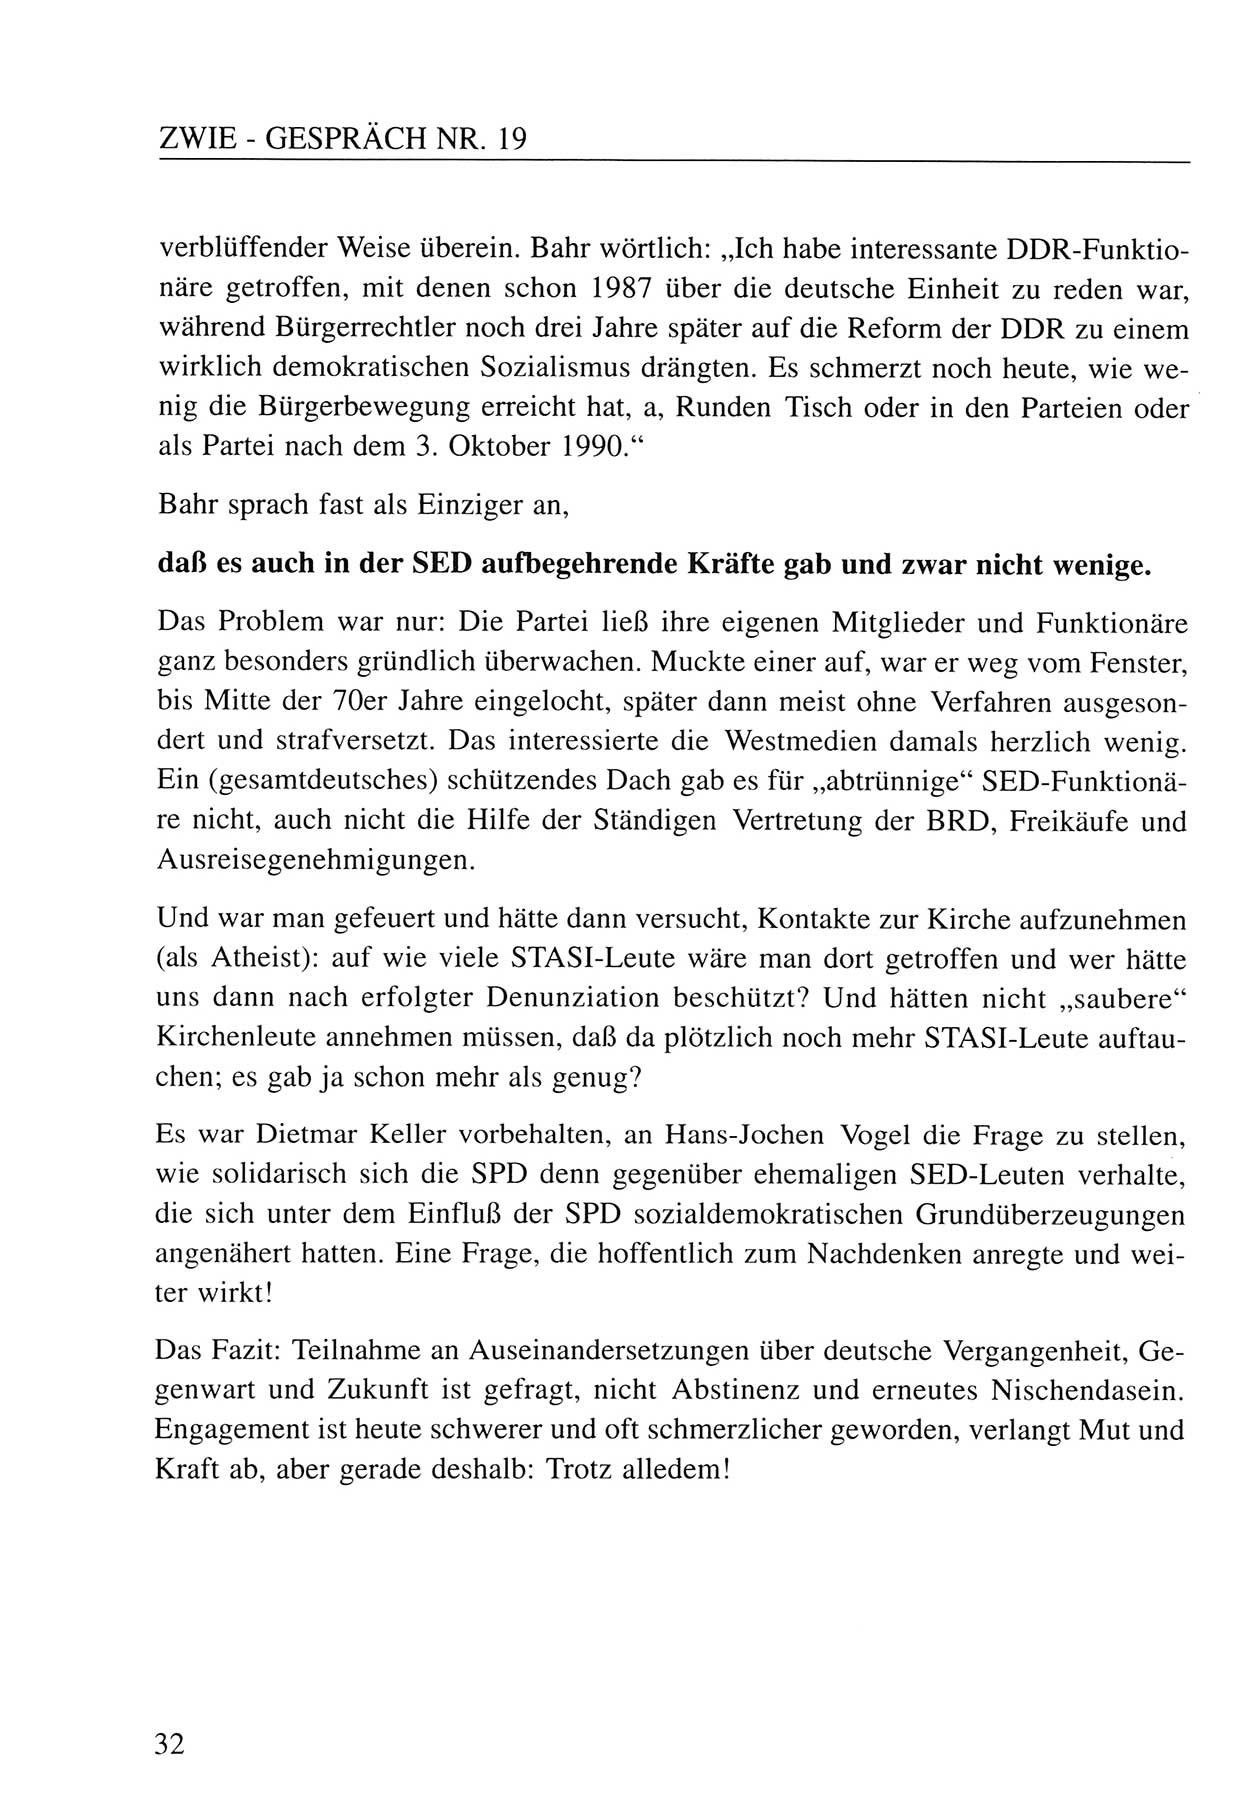 Zwie-Gespräch, Beiträge zum Umgang mit der Staatssicherheits-Vergangenheit [Deutsche Demokratische Republik (DDR)], Ausgabe Nr. 19, Berlin 1994, Seite 32 (Zwie-Gespr. Ausg. 19 1994, S. 32)